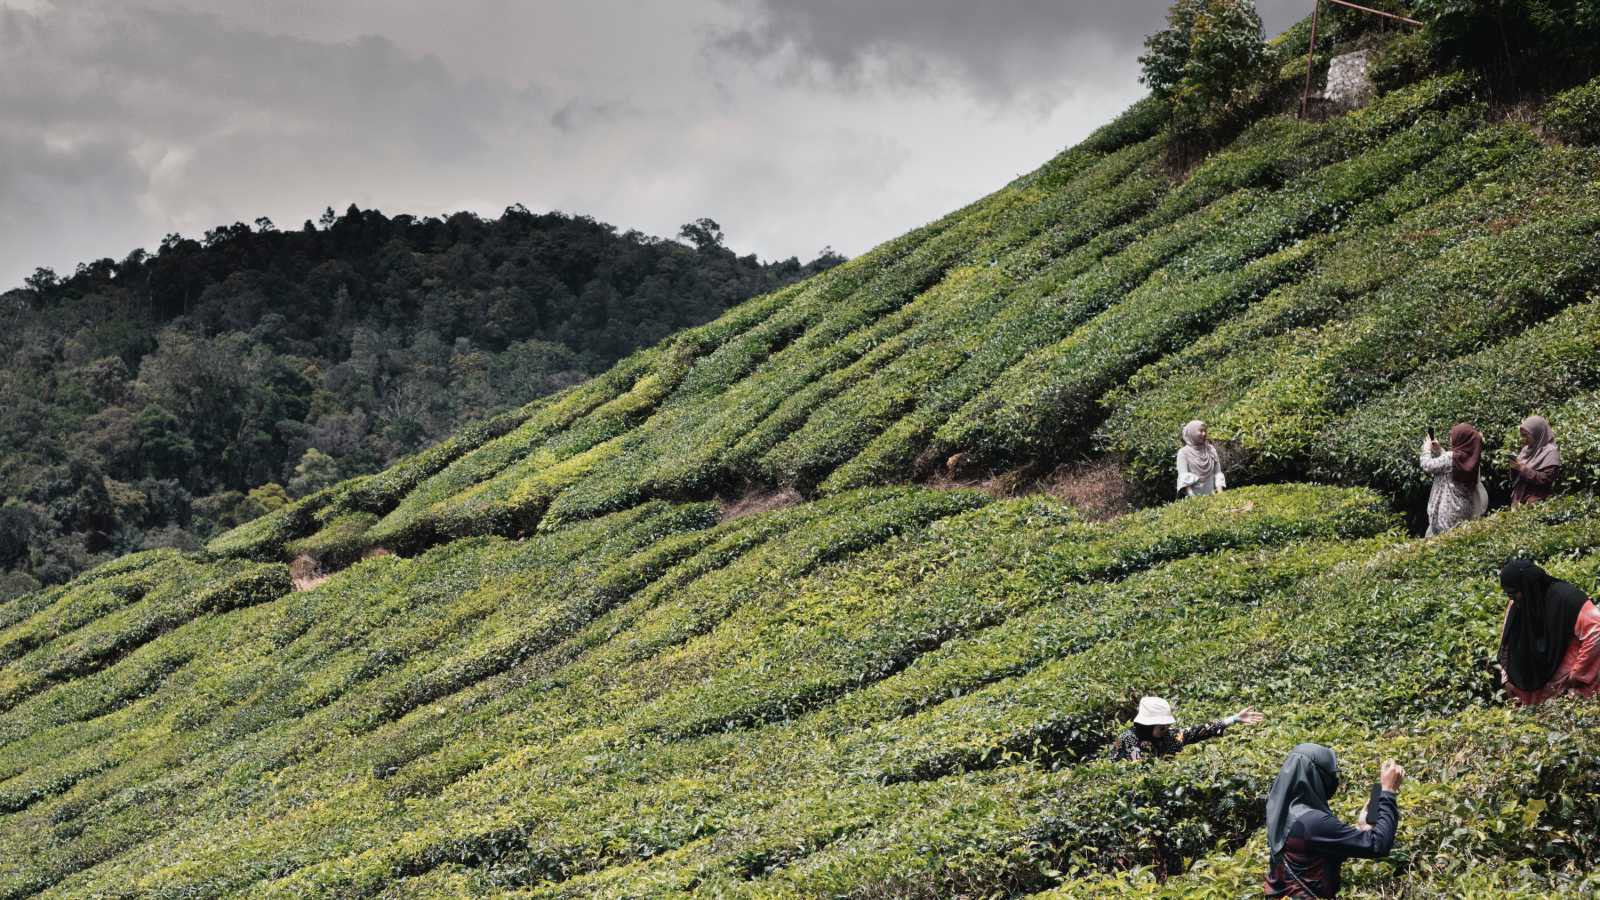 Les Cameron Highlands, en Malaisie. Une région productrice de thé (c) Unsplash